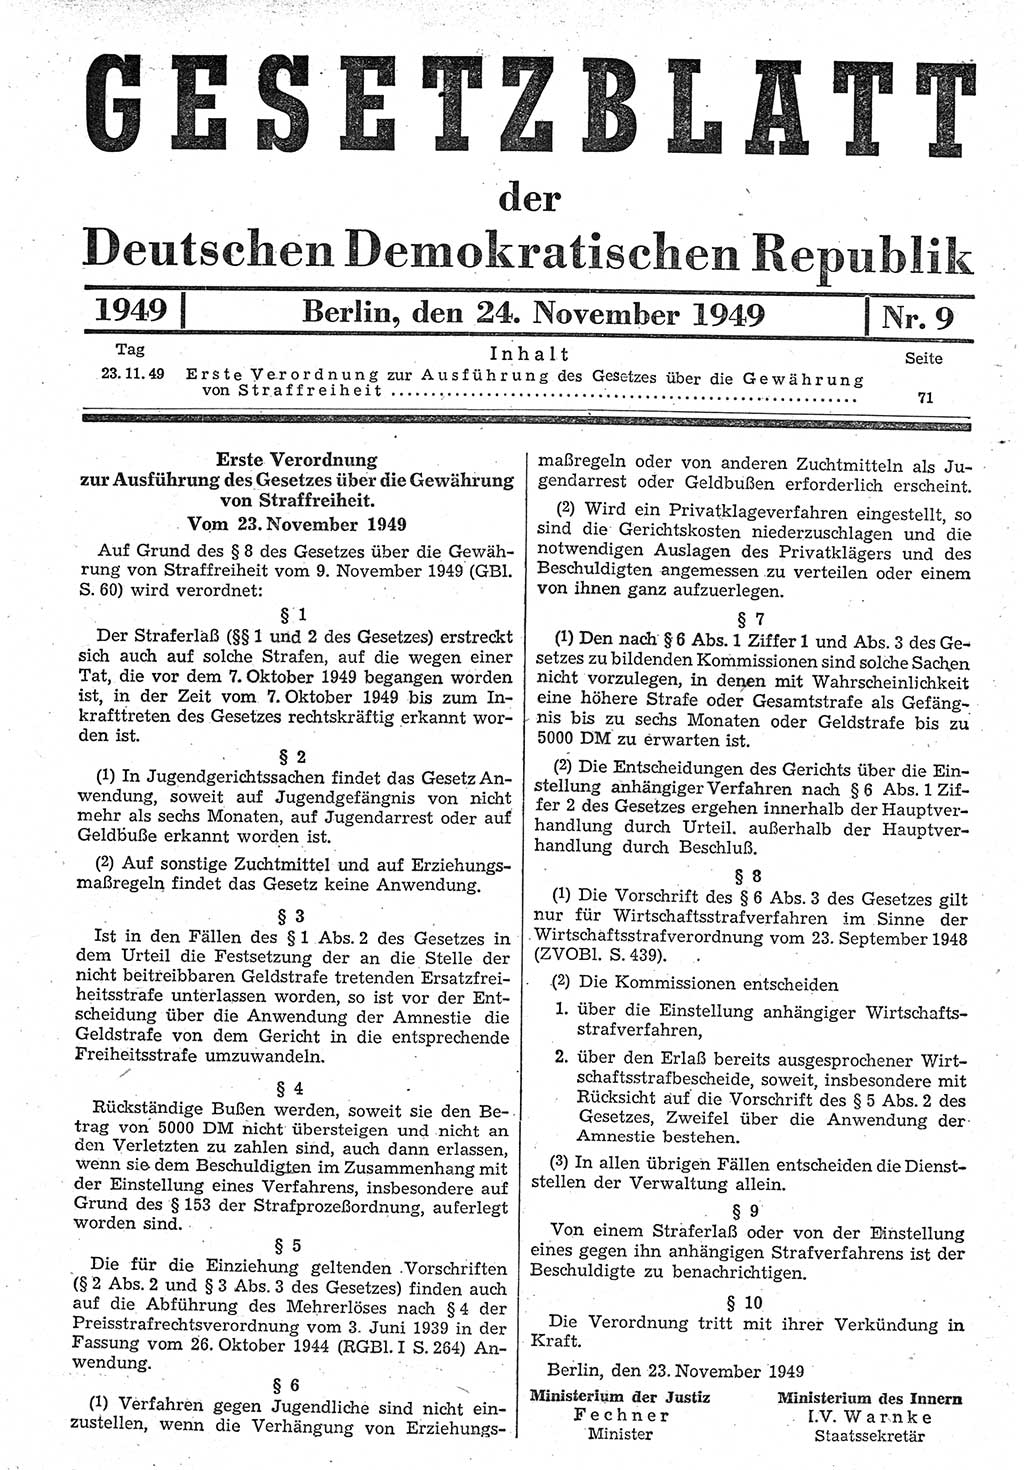 Gesetzblatt (GBl.) der Deutschen Demokratischen Republik (DDR) 1949, Seite 71 (GBl. DDR 1949, S. 71)